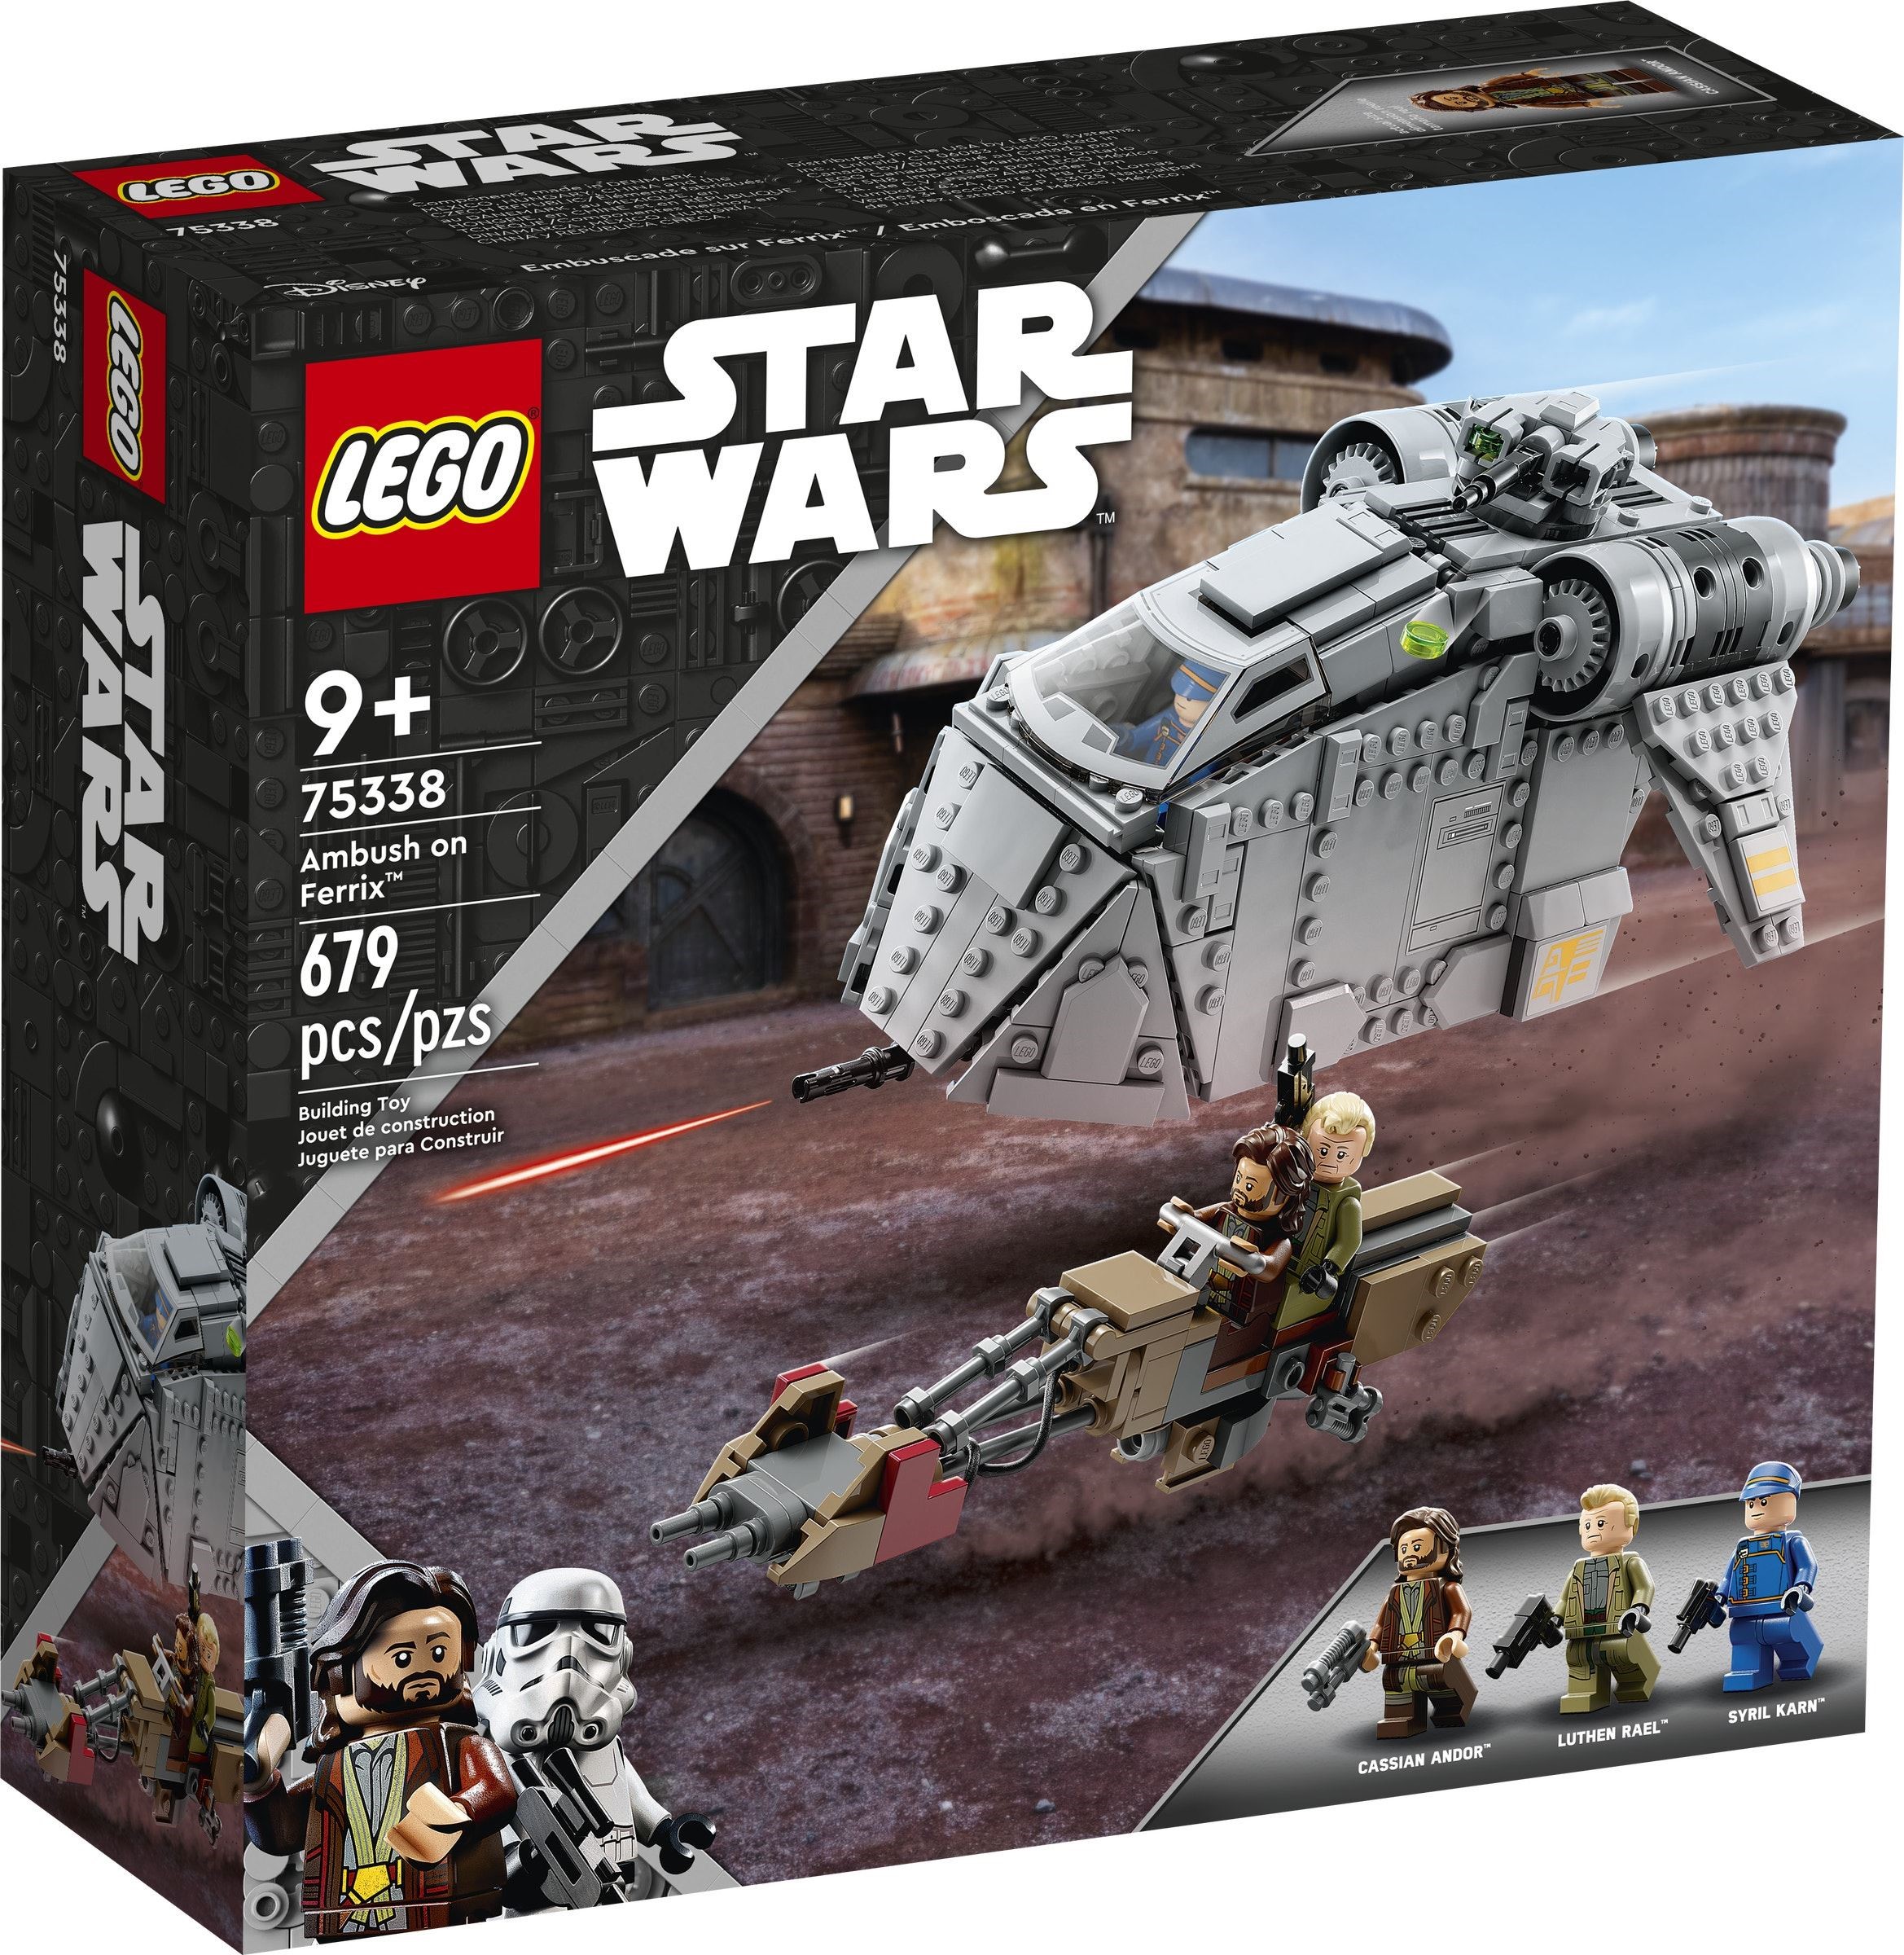 LEGO Star Wars 75338 - Agguato su Ferrix